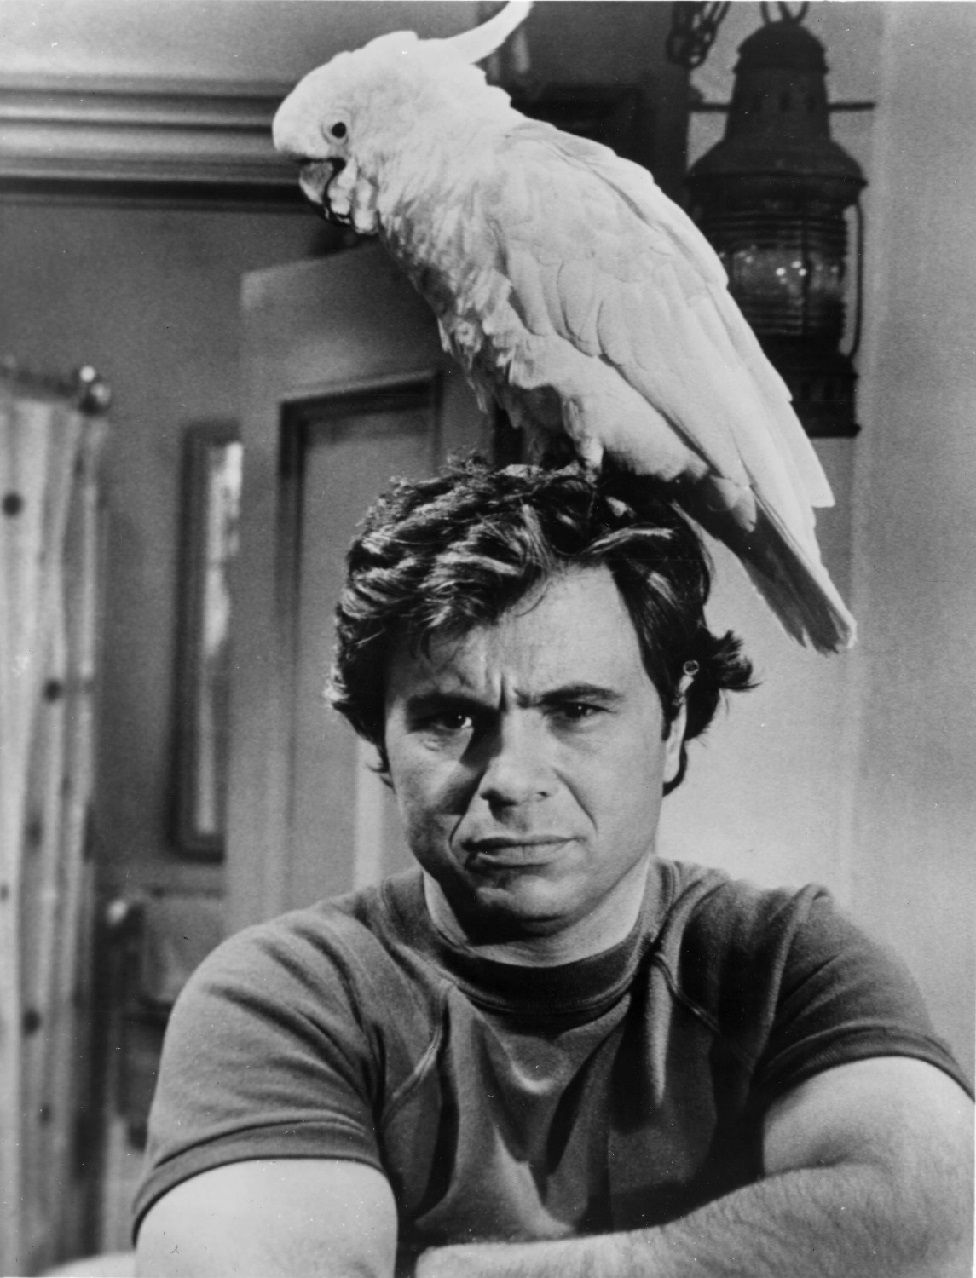 Актер Роберт Блейк стоит с экзотической птицей на голове в кадре из криминального телесериала «Баретта», 1976 год.